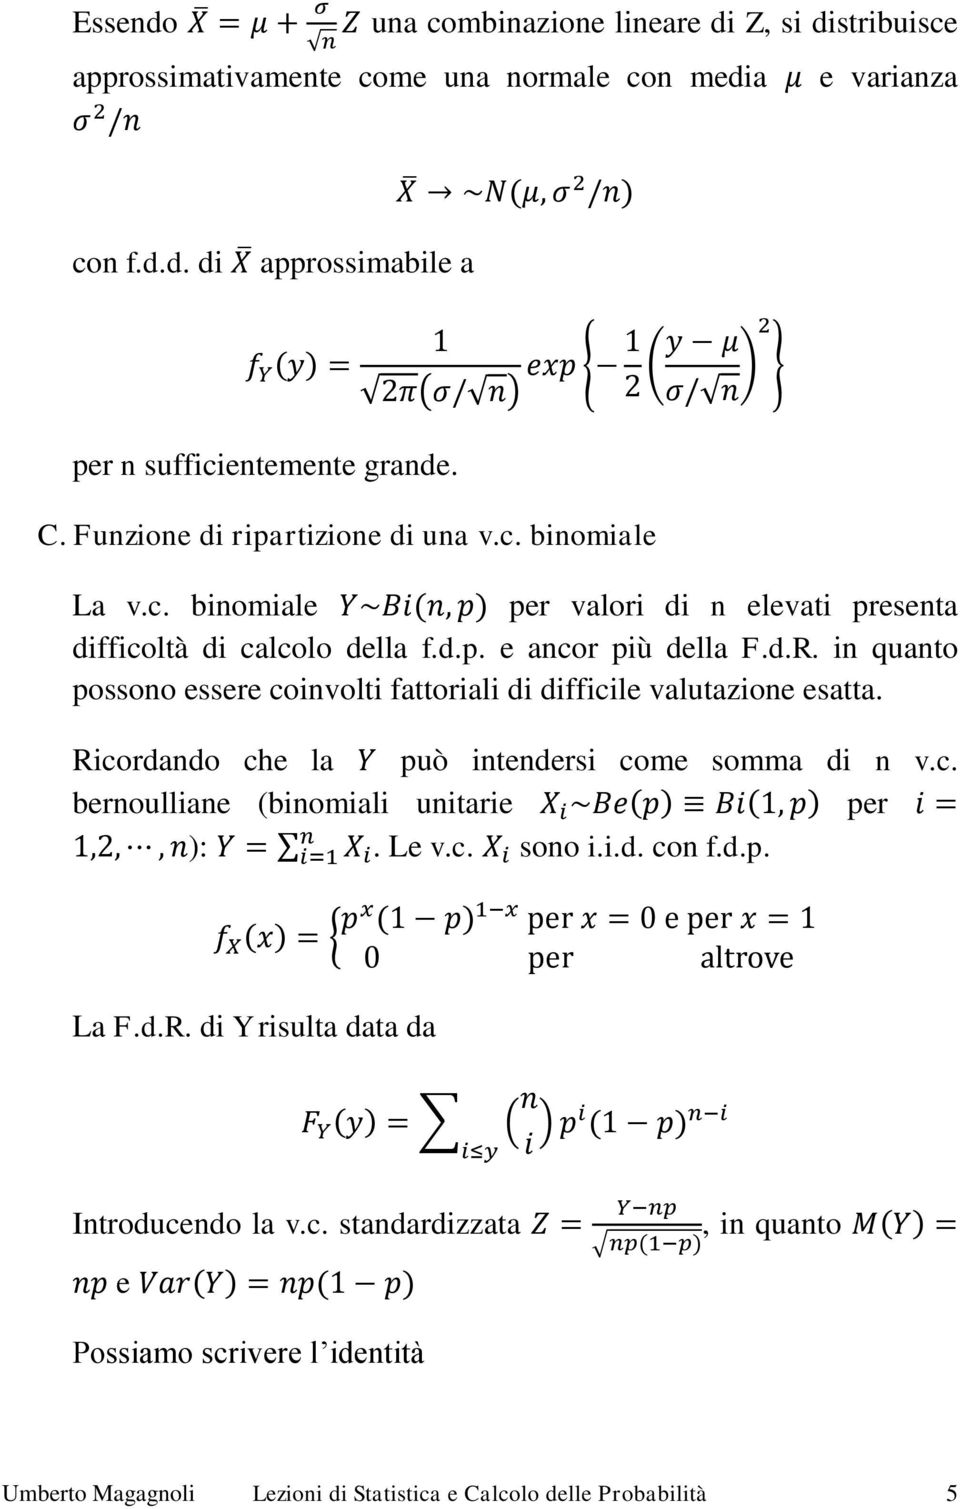 in quanto possono essere coinvolti fattoriali di difficile valutazione esatta. Ricordando che la può intendersi come somma di n v.c. bernoulliane (binomiali unitarie per ):. Le v.